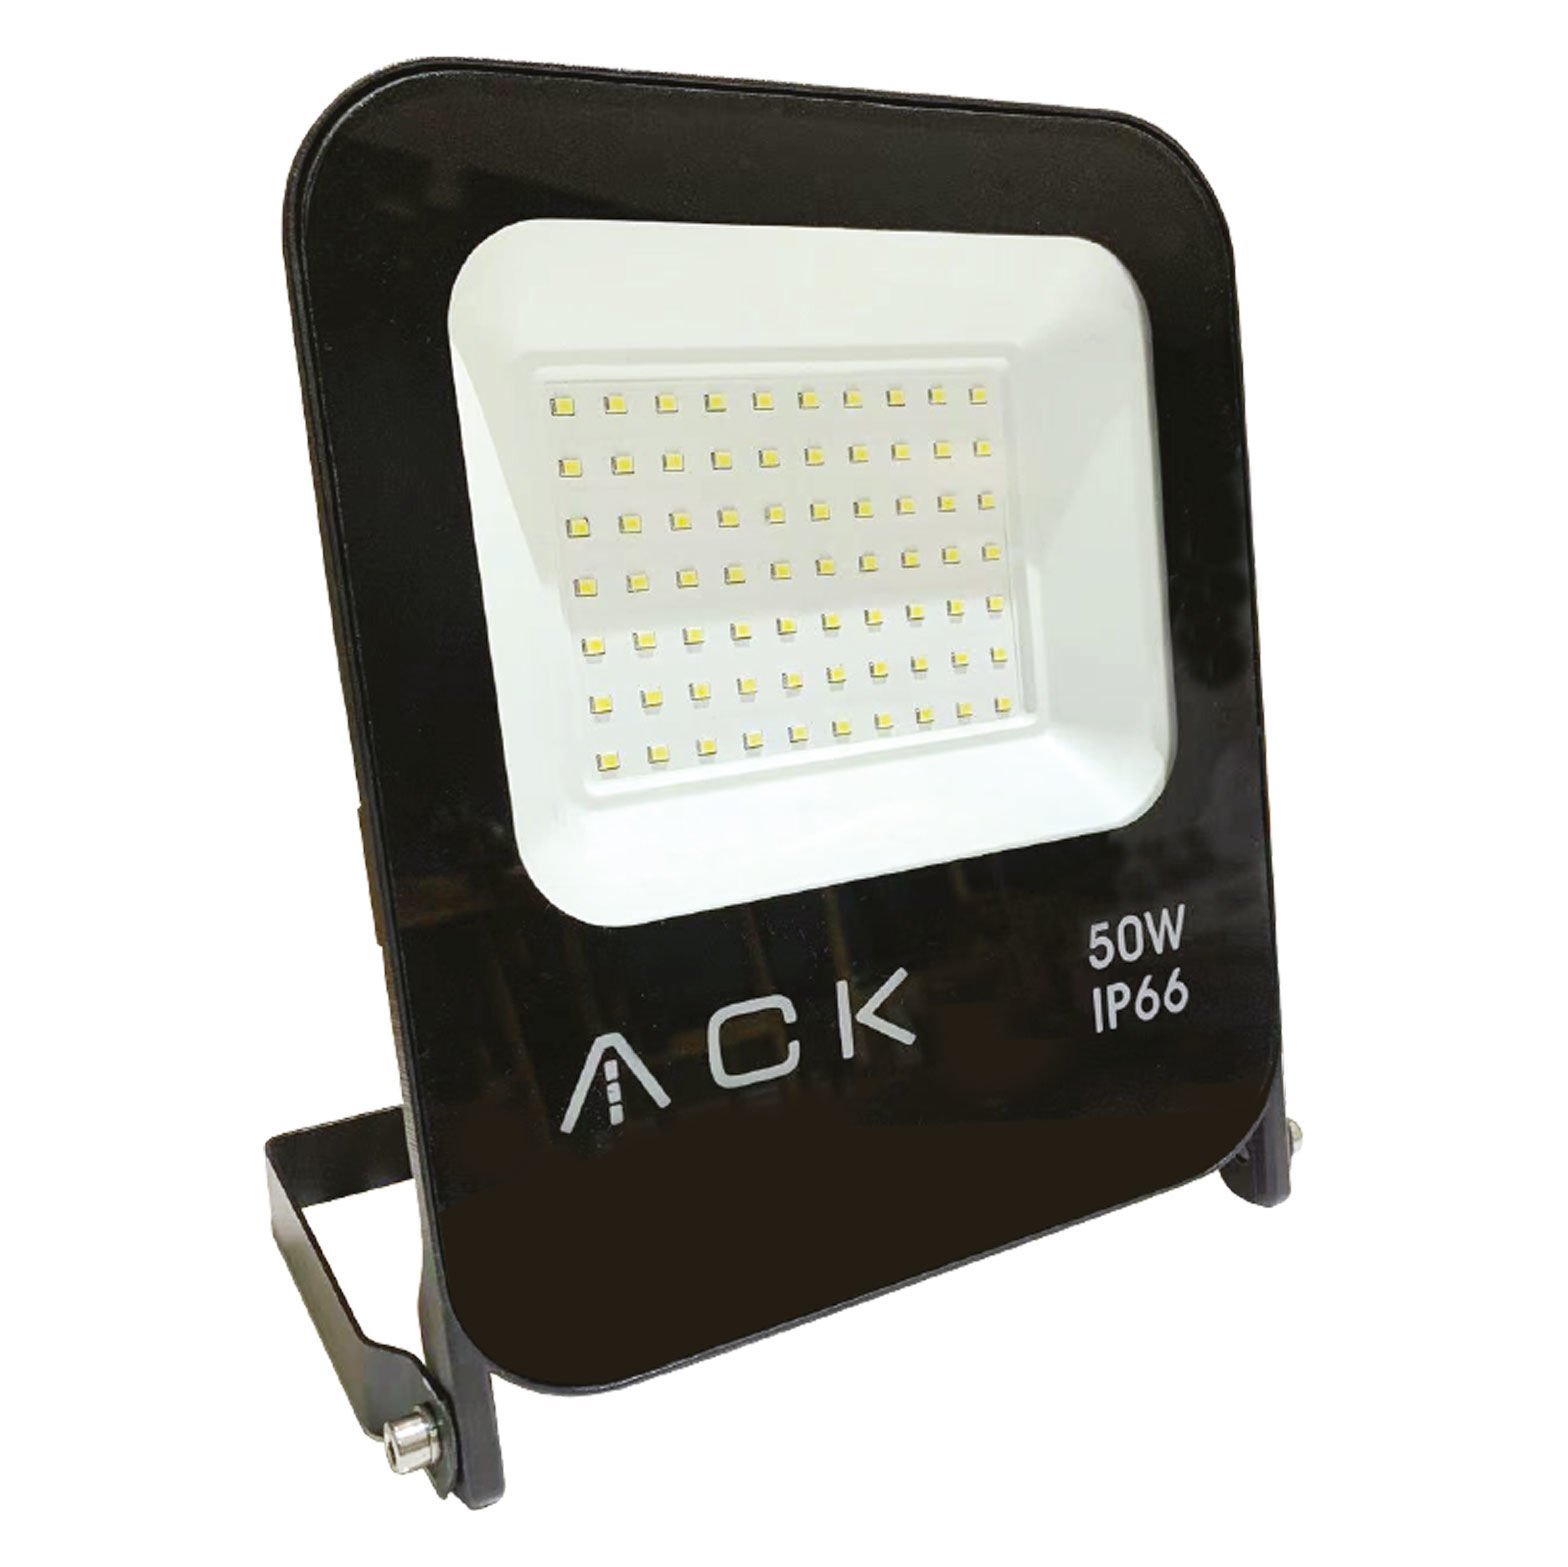 ACK 50W Yeşil Işık Led Projektör AT62 05052